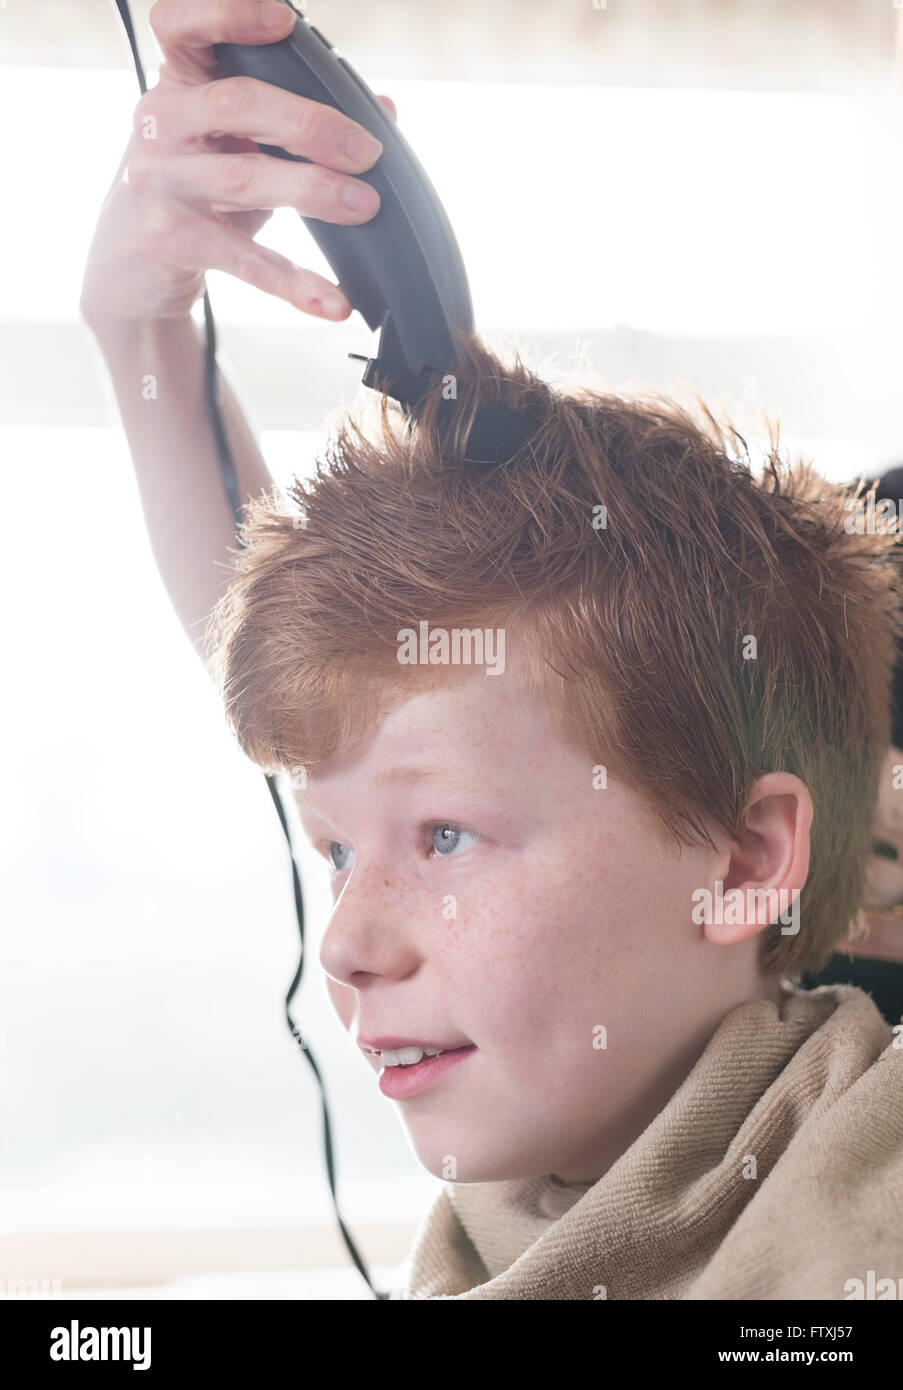 Un garçon ayant ses cheveux coupés avec clippers et des ciseaux. Banque D'Images